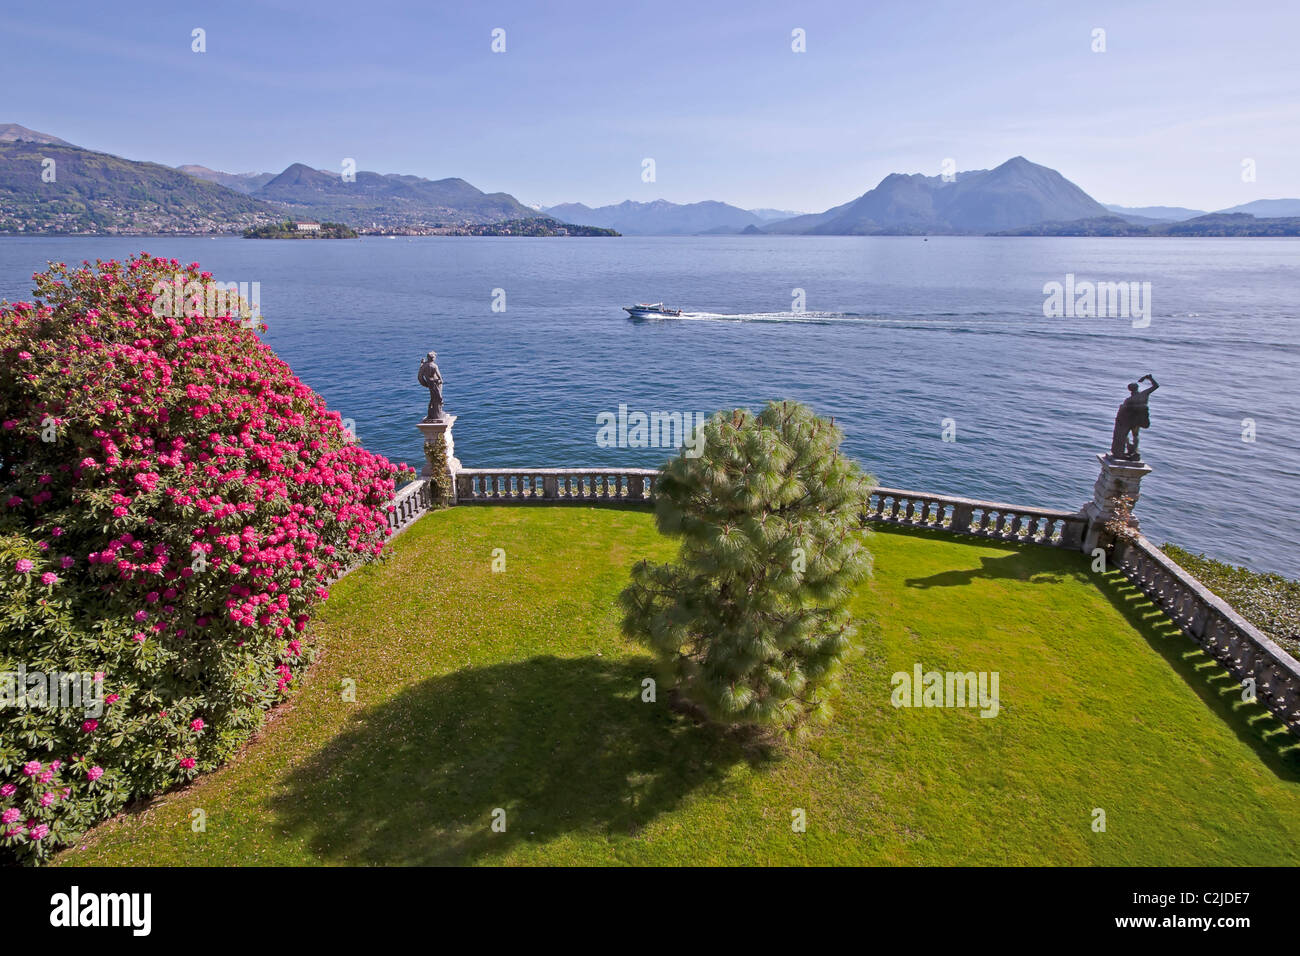 Isola Bella - Italien - Lago Maggiore Stockfoto